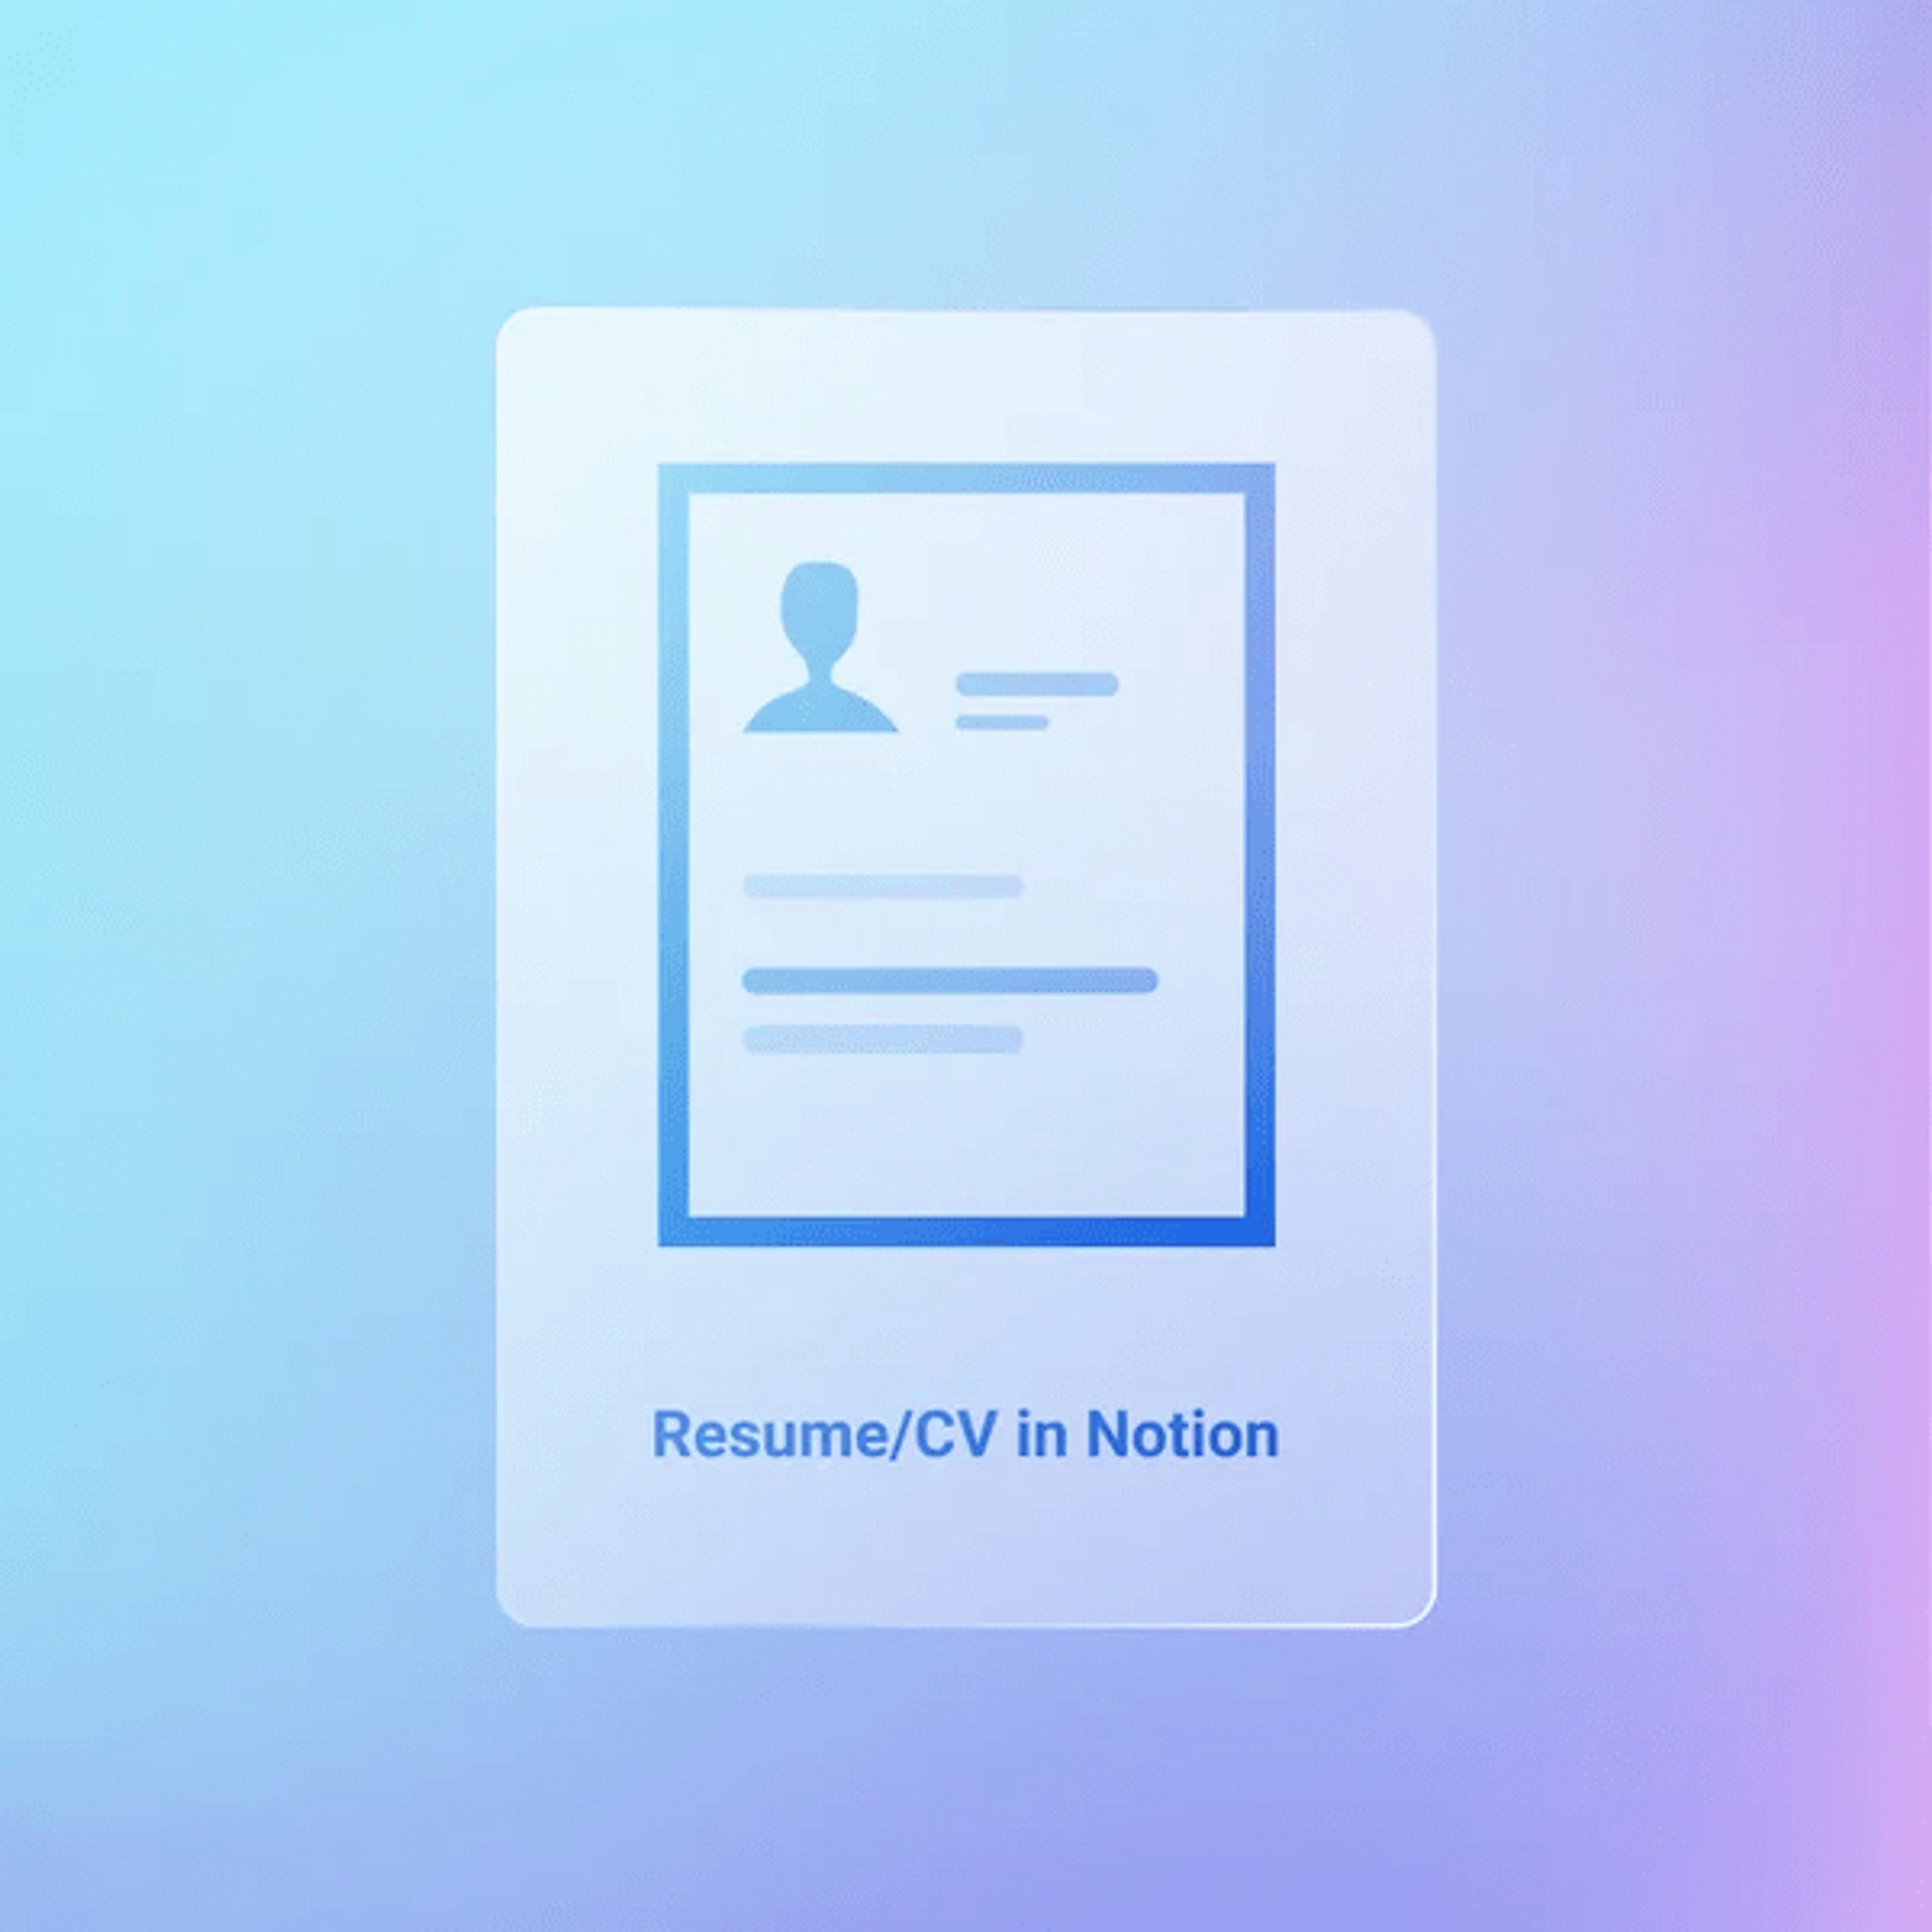 Notion Resume/CV